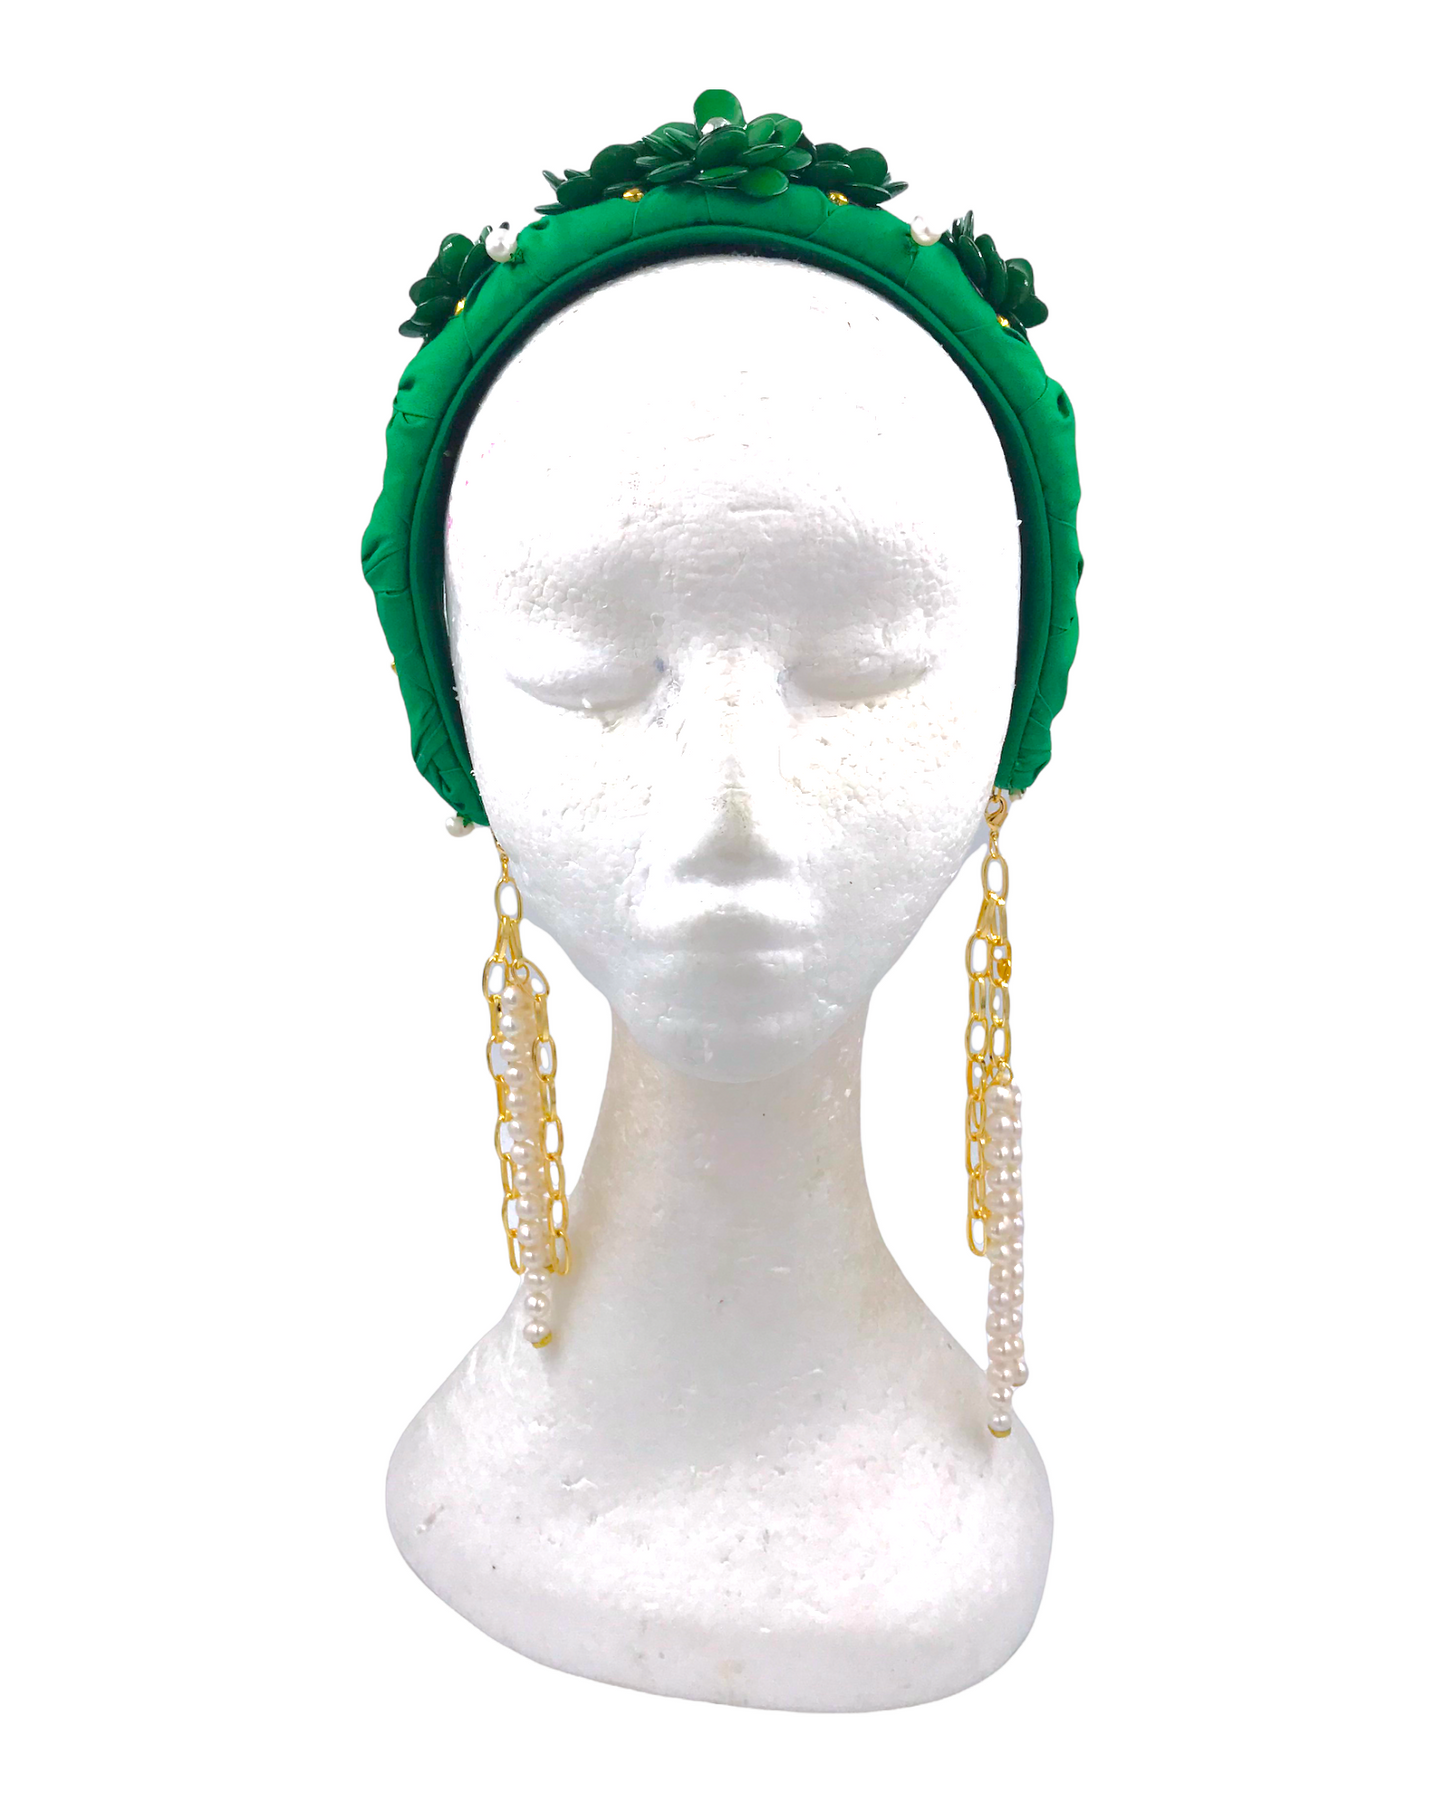 D-Headband , headpiece fashion headband , green headband